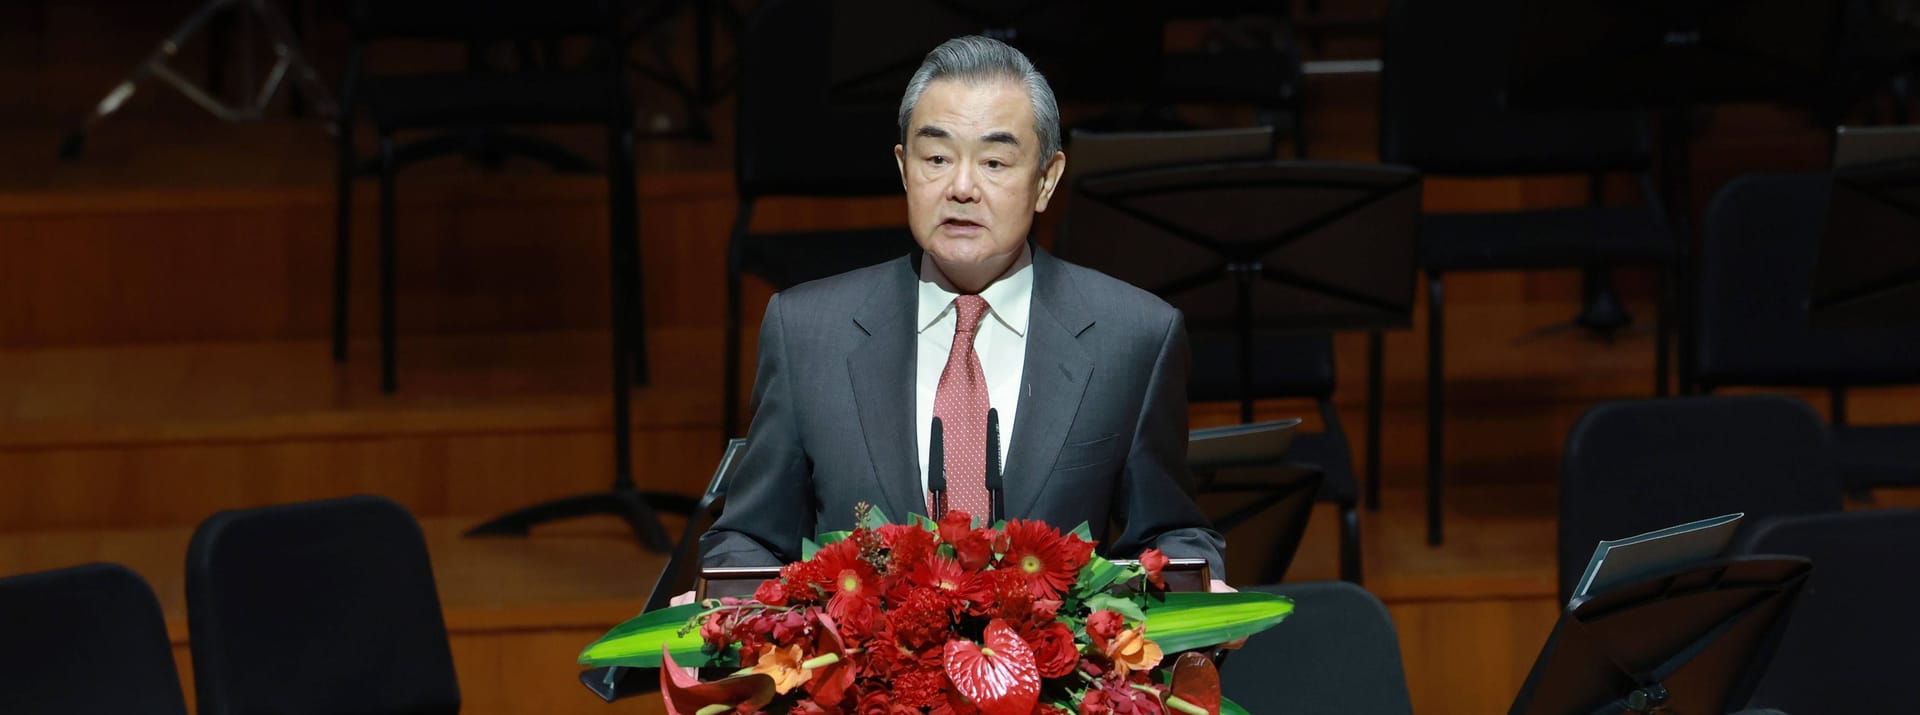 Die chinesische Führung schickt dagegen ihren obersten Außenpolitiker und chinesischen Außenminister Wang Yi zur Sicherheitskonferenz.